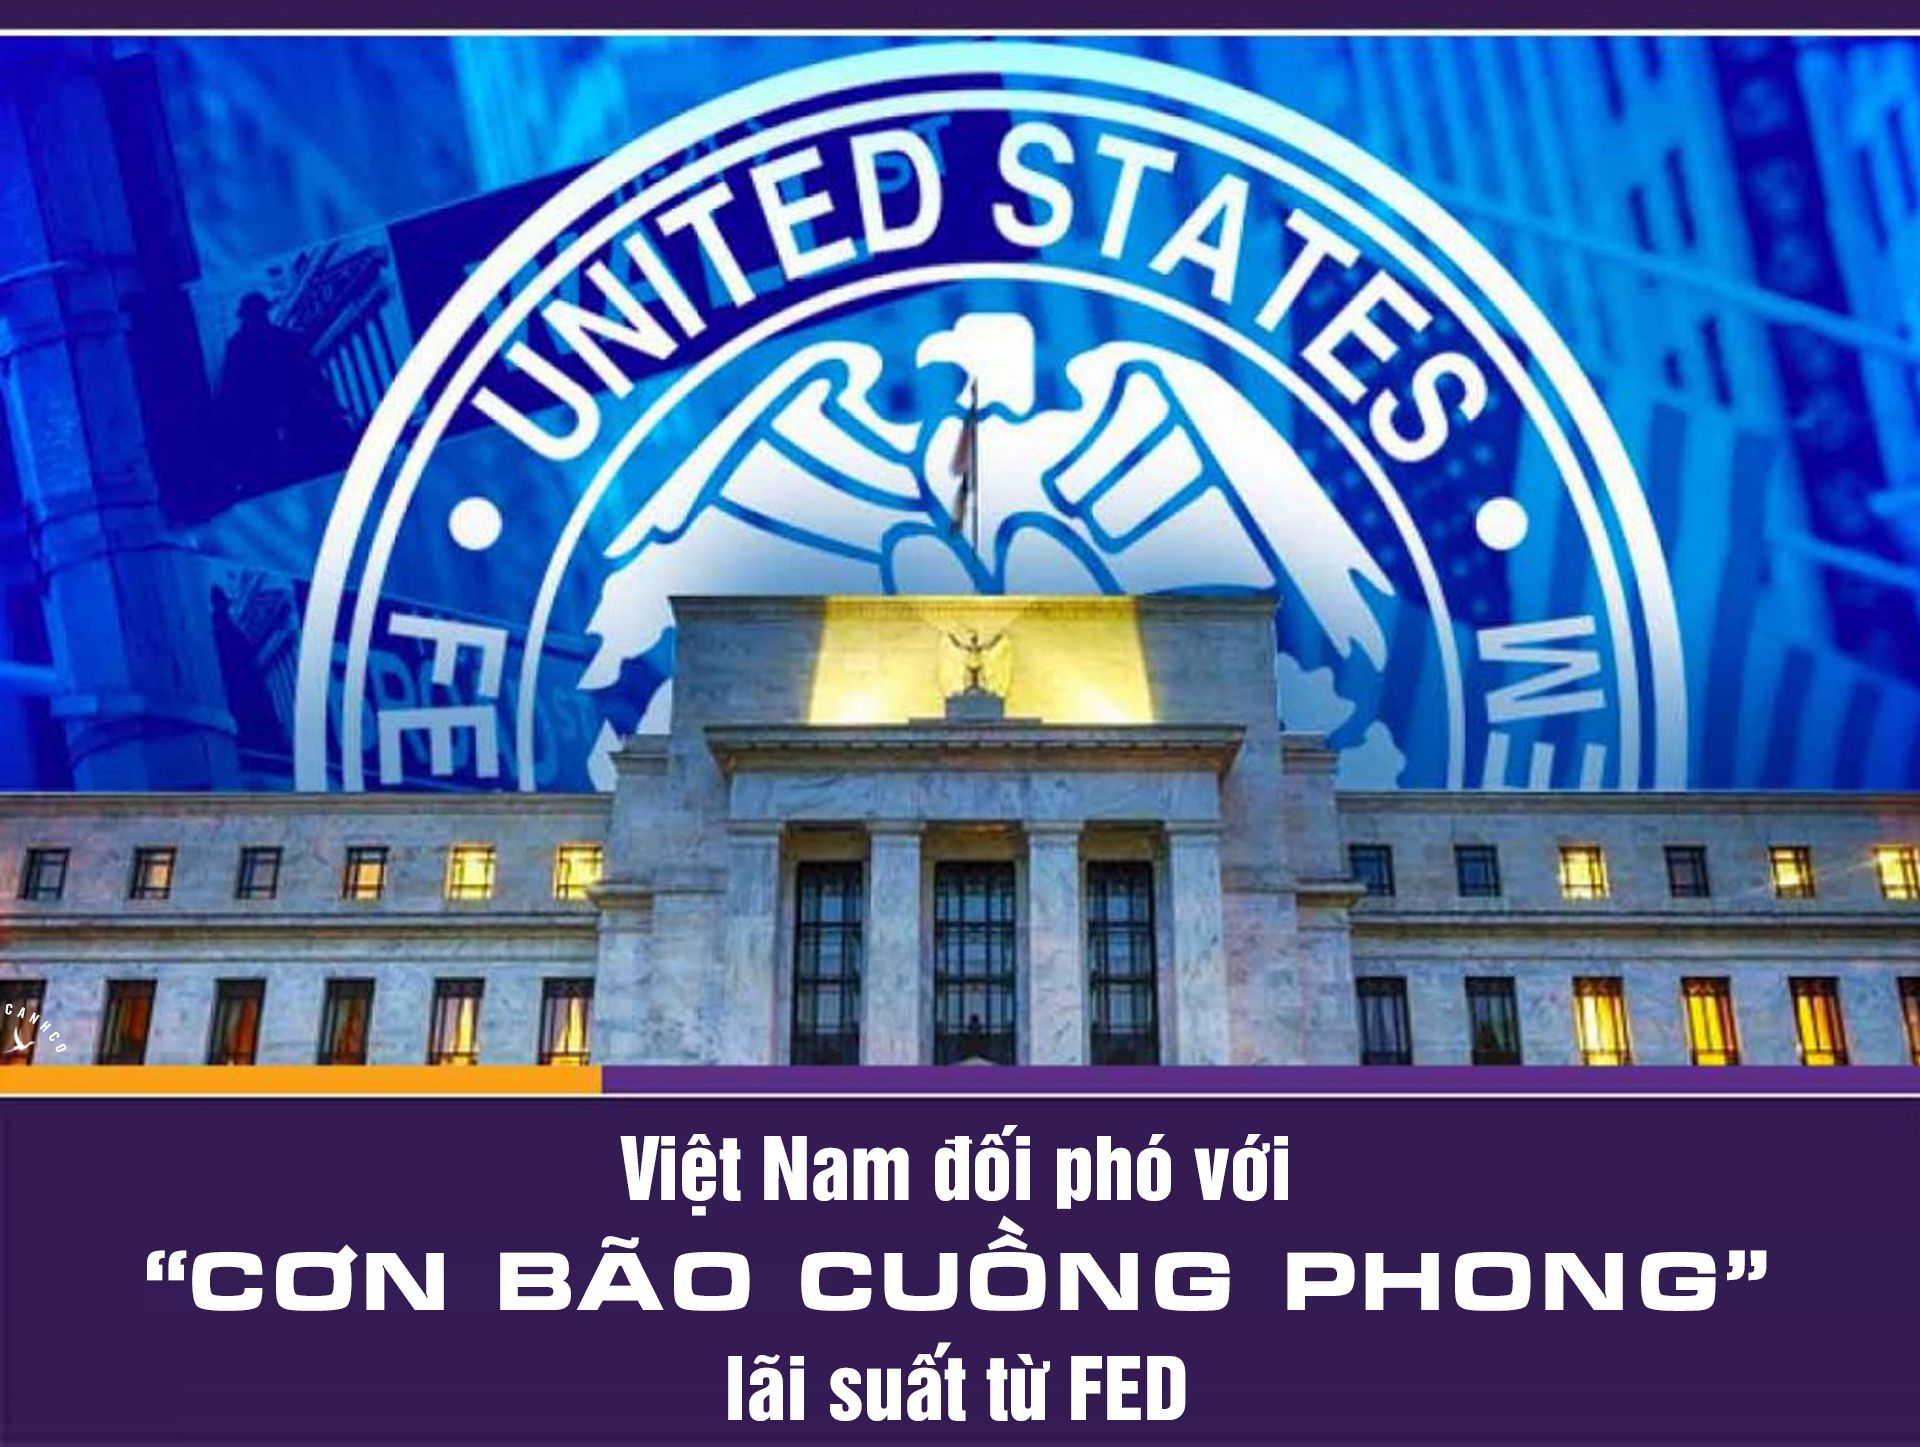 Việt Nam đối phó với “cơn bão cuồng phong” lãi suất từ FED